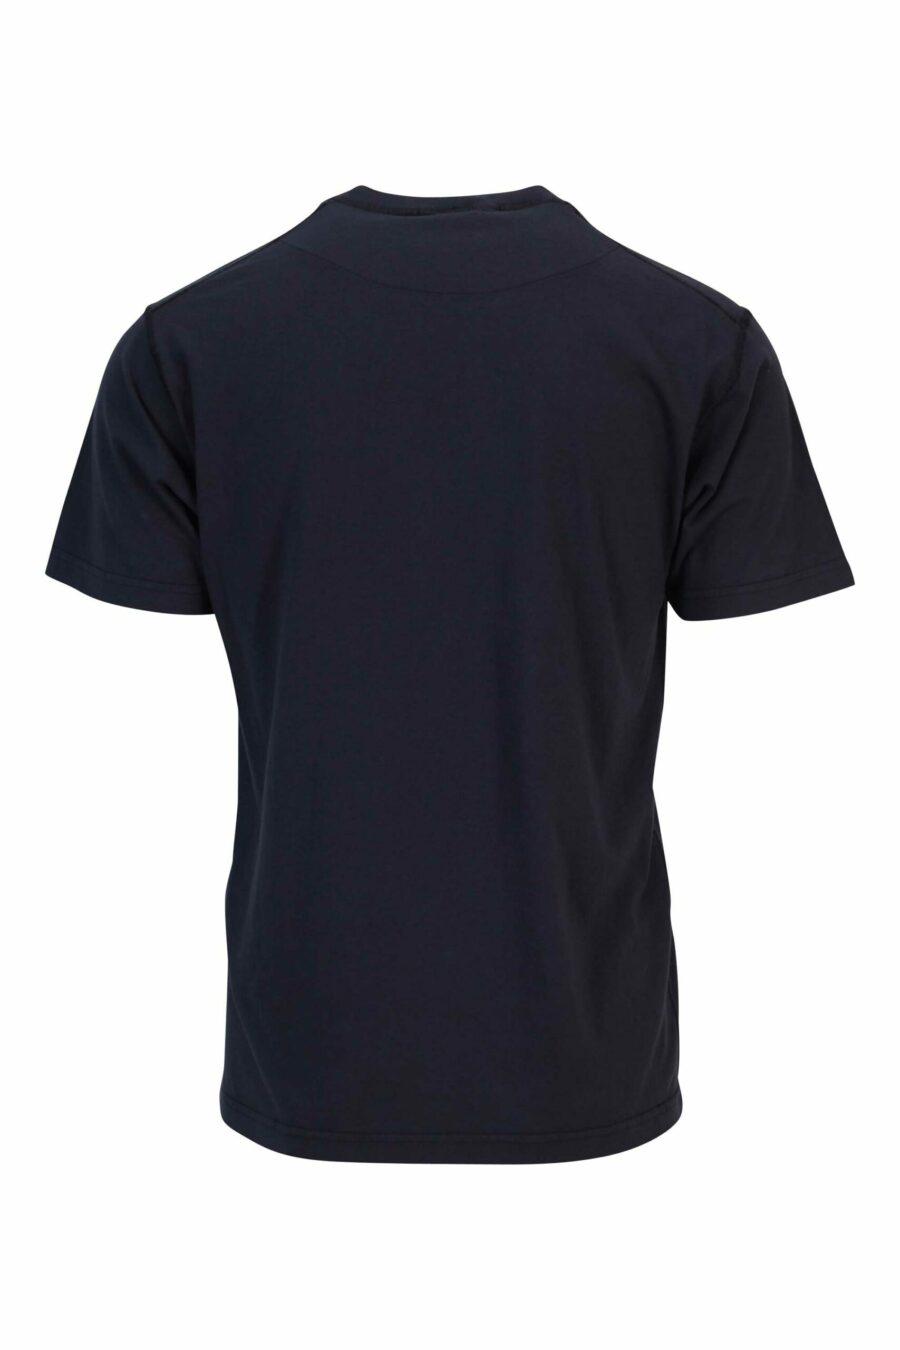 Camiseta azul oscuro con minilogo brújula - 8052572905155 1 scaled